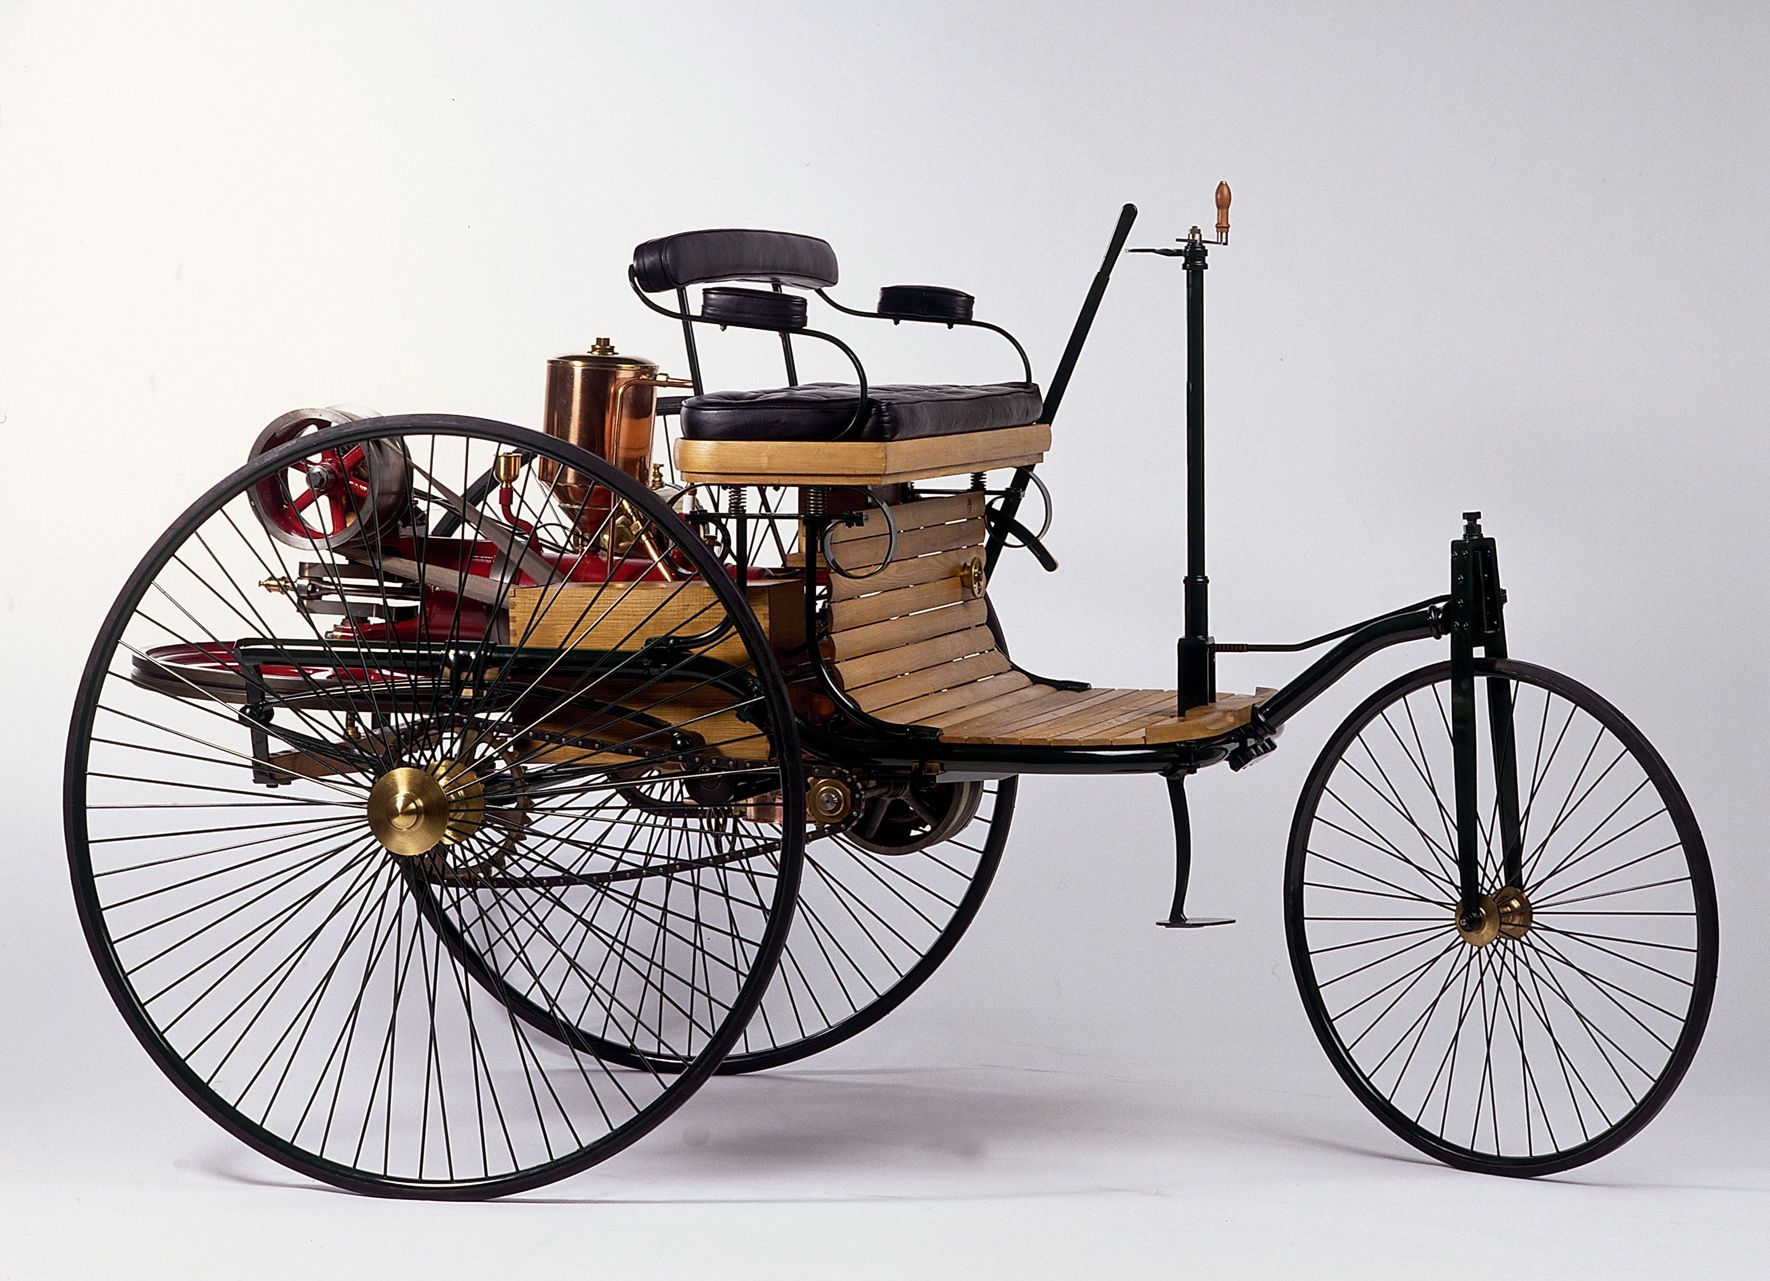 Mobil pertama di Dunia - Benz Patent Motorwagen tahun 1886 (replika). Pada 29 Januari 1886, Carl Benz mengajukan paten   pada _kendaraan bertenaga gas.*/Dok. Mercedes-Benz